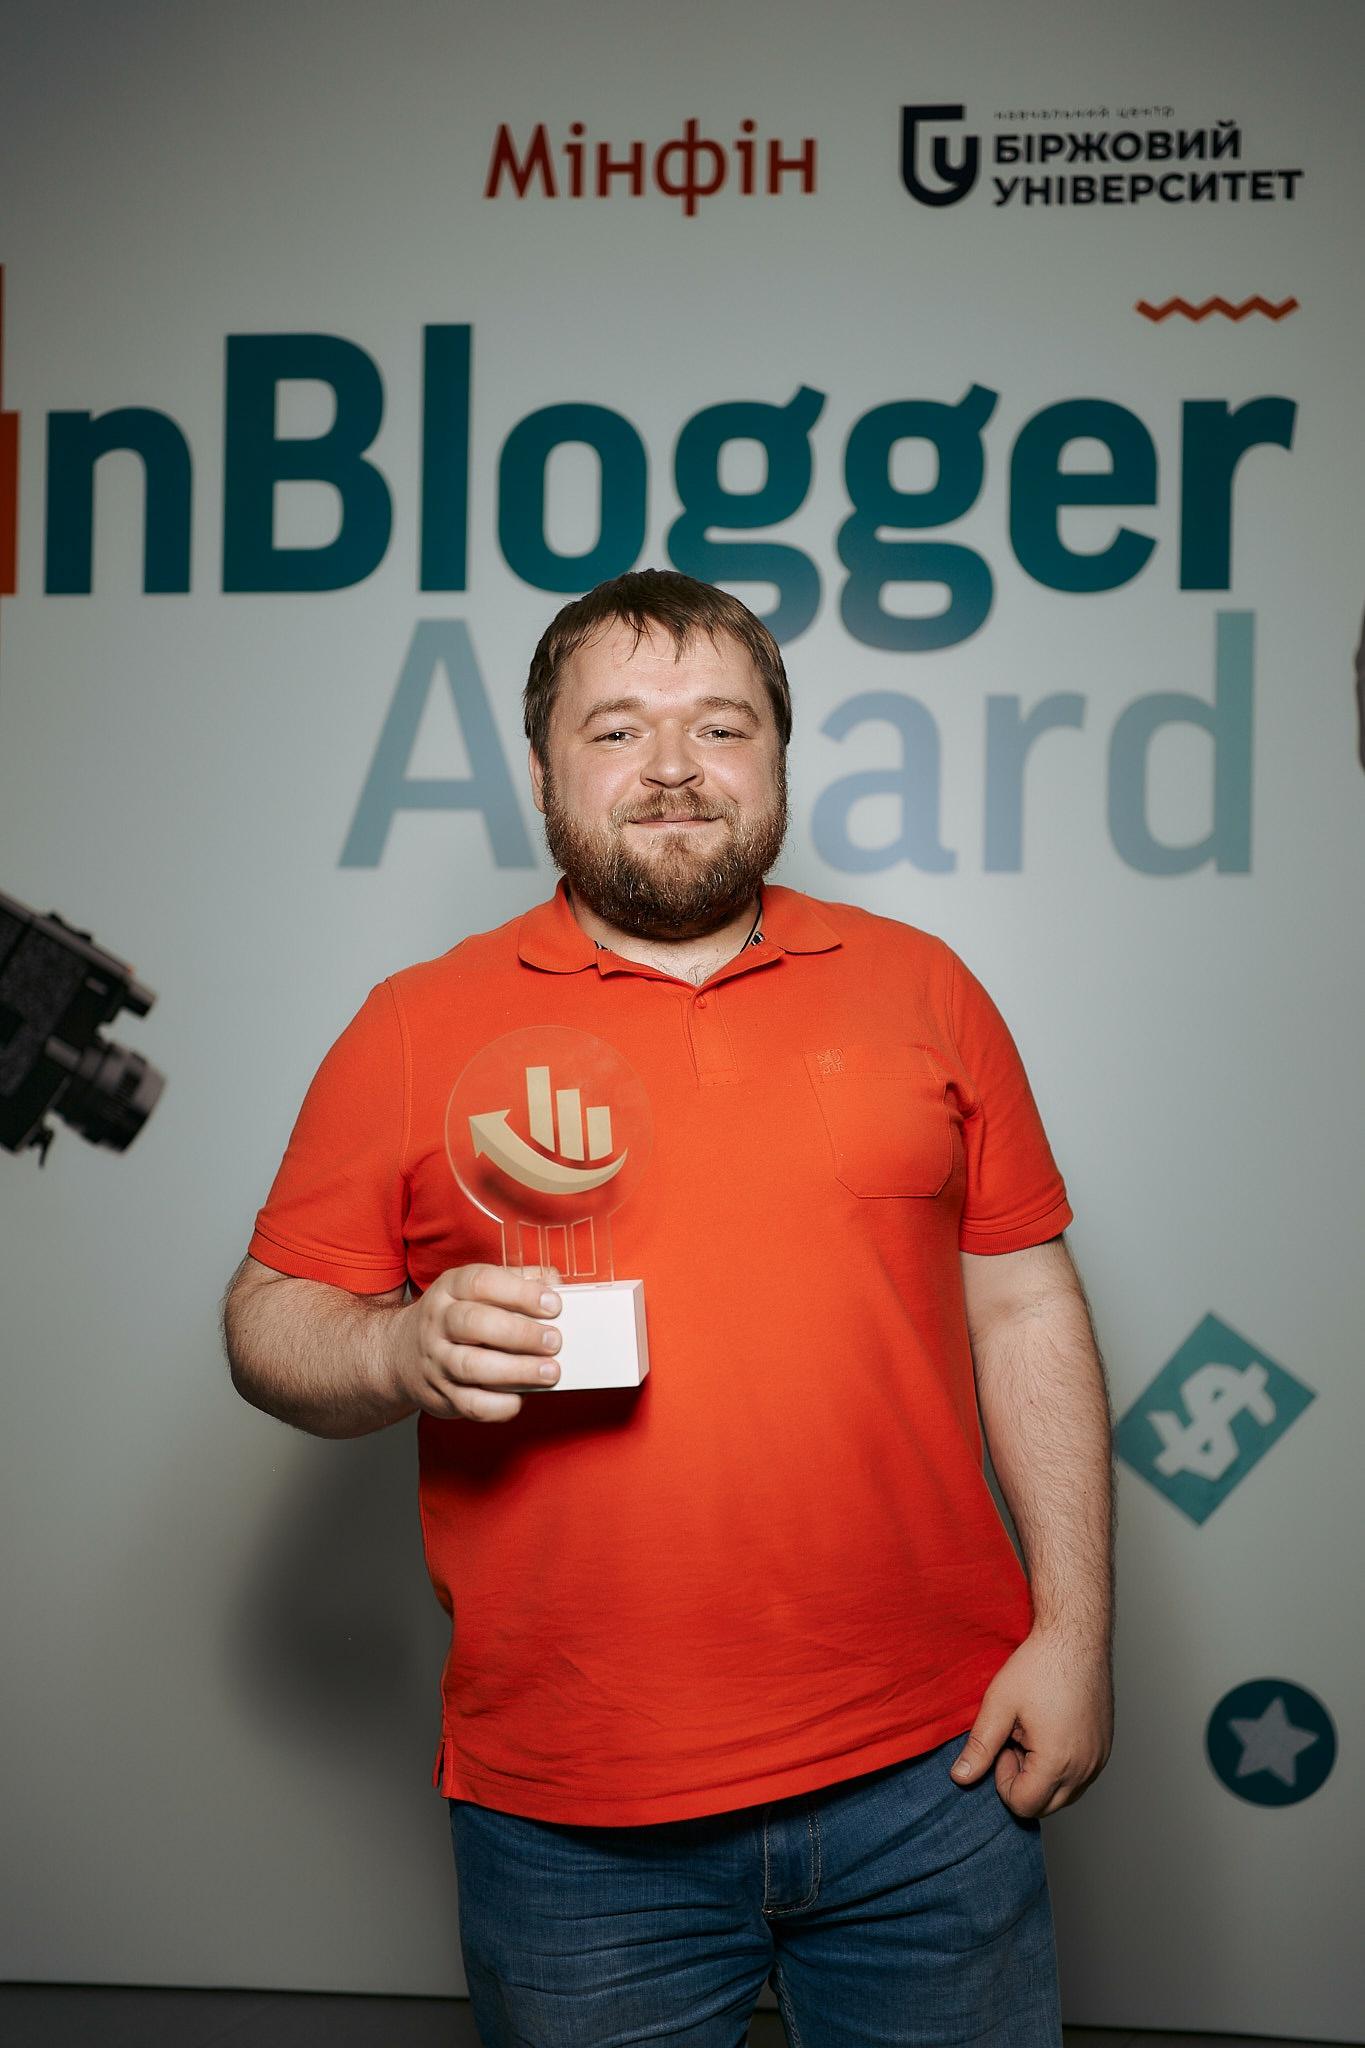 Fin Blogger Award 2023: нагородження найкращих фінансових блогерів України